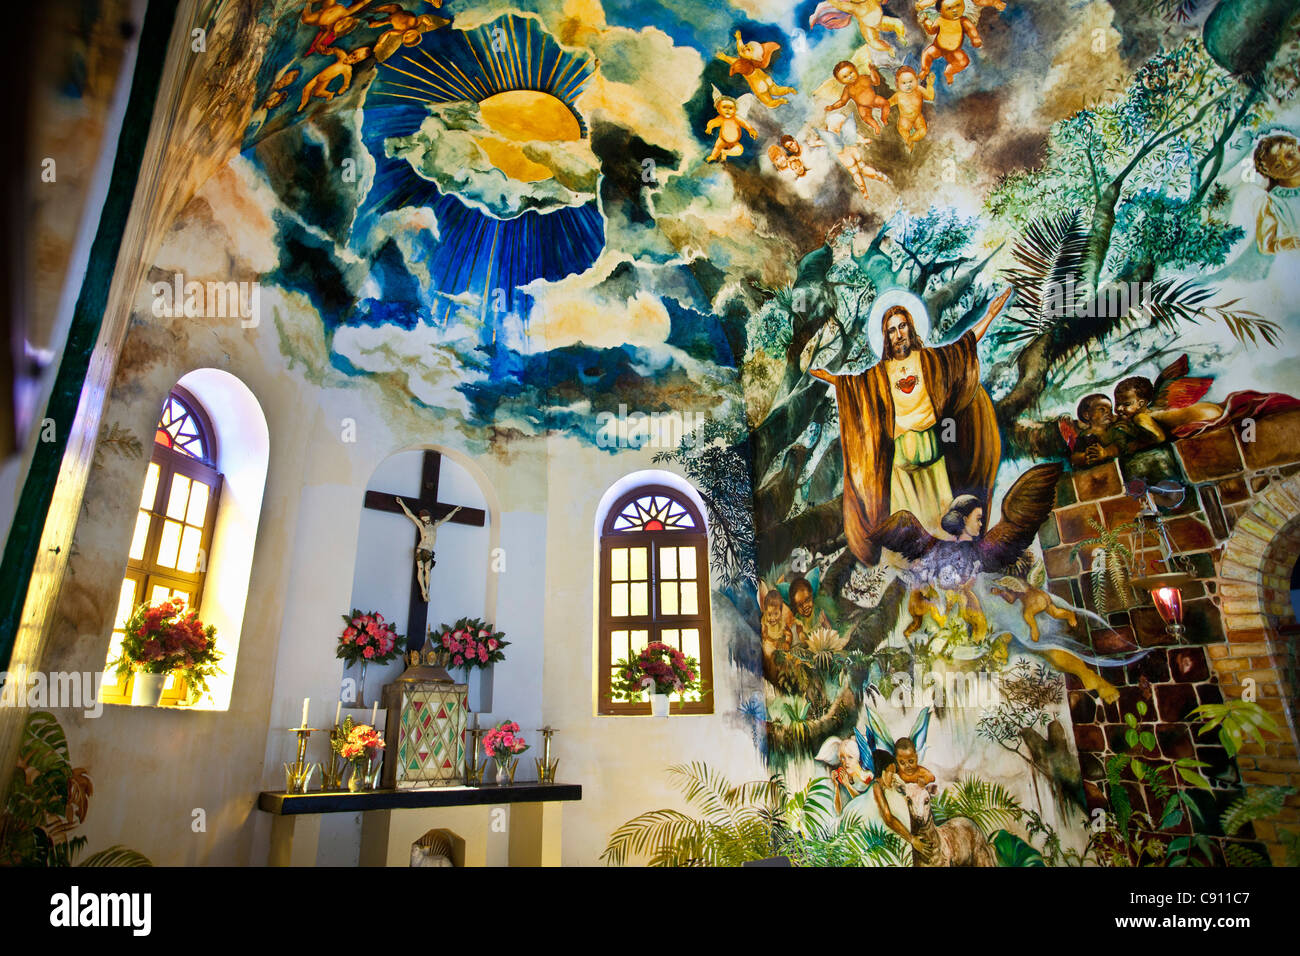 Isola di Saba, olandese dei Caraibi. Chiesa del Sacro Cuore di Gesù, la Chiesa cattolica romana. Murale dipinto dall'artista residente Heleen Cornet. Foto Stock